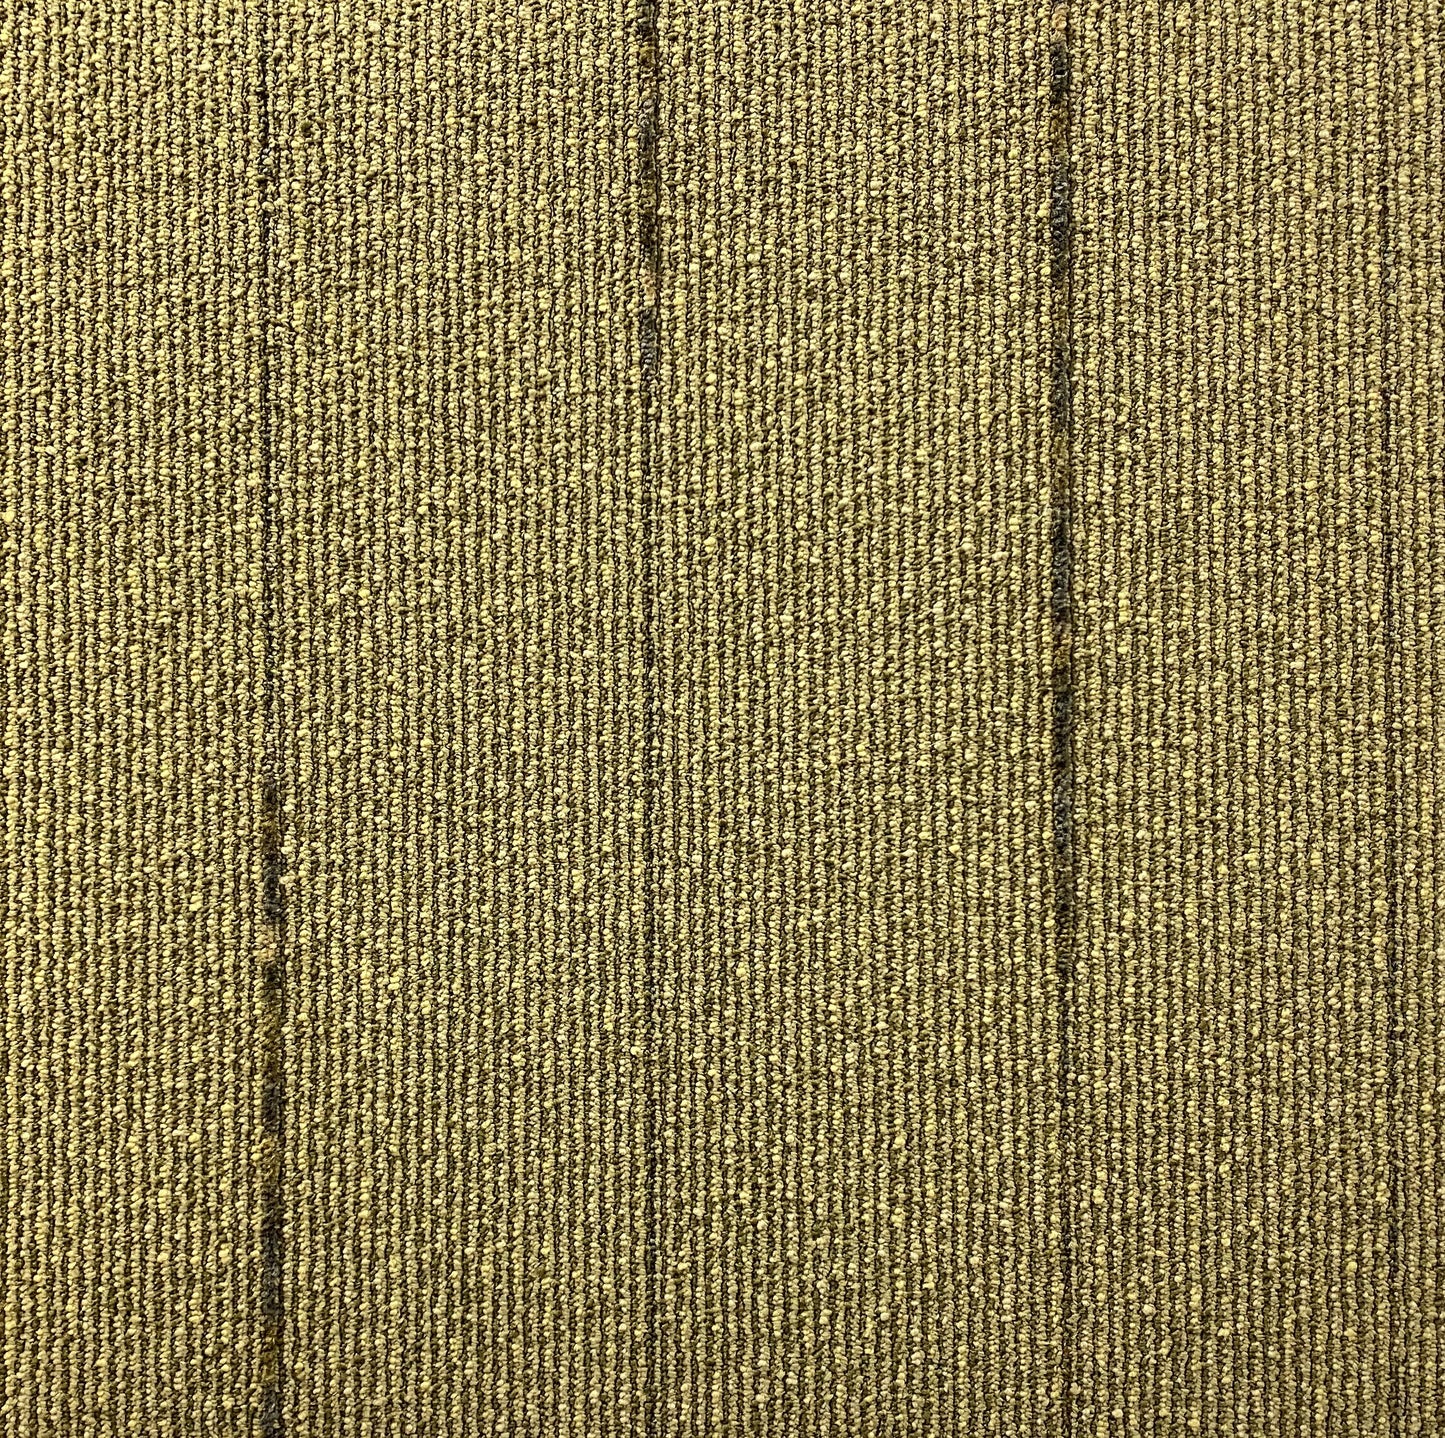 Shaw Cadence Carpet Tile-24"x 24"(12 Tiles/case, 48 sq. ft./case)